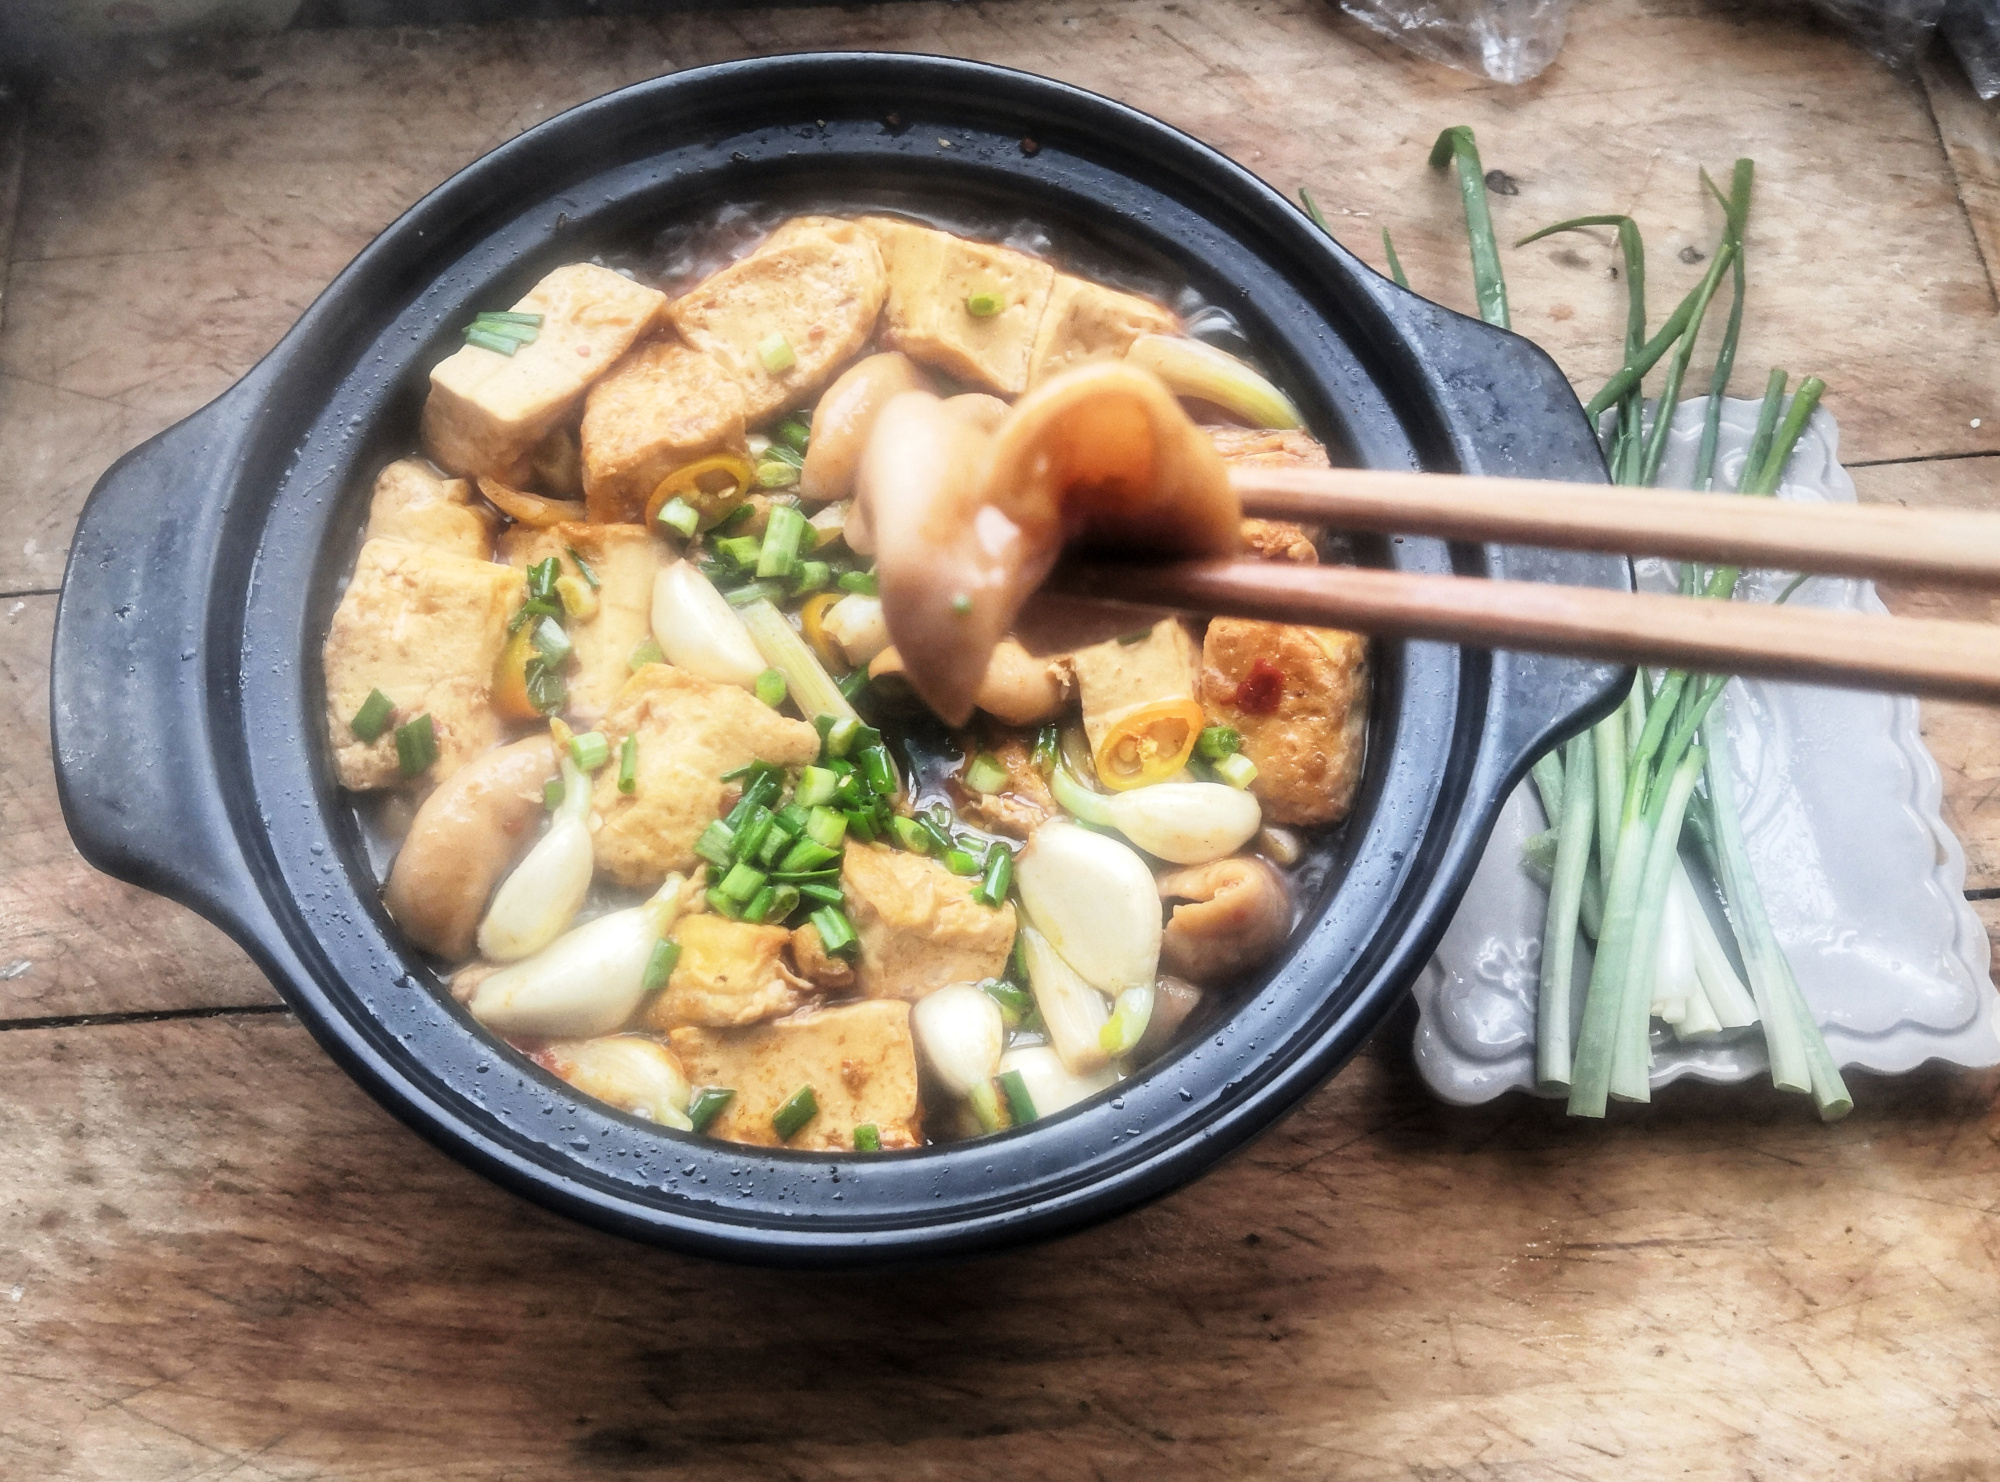 晚上准备一道特别香的菜,豆腐炖大肠做晚餐,吃的暖和又美味